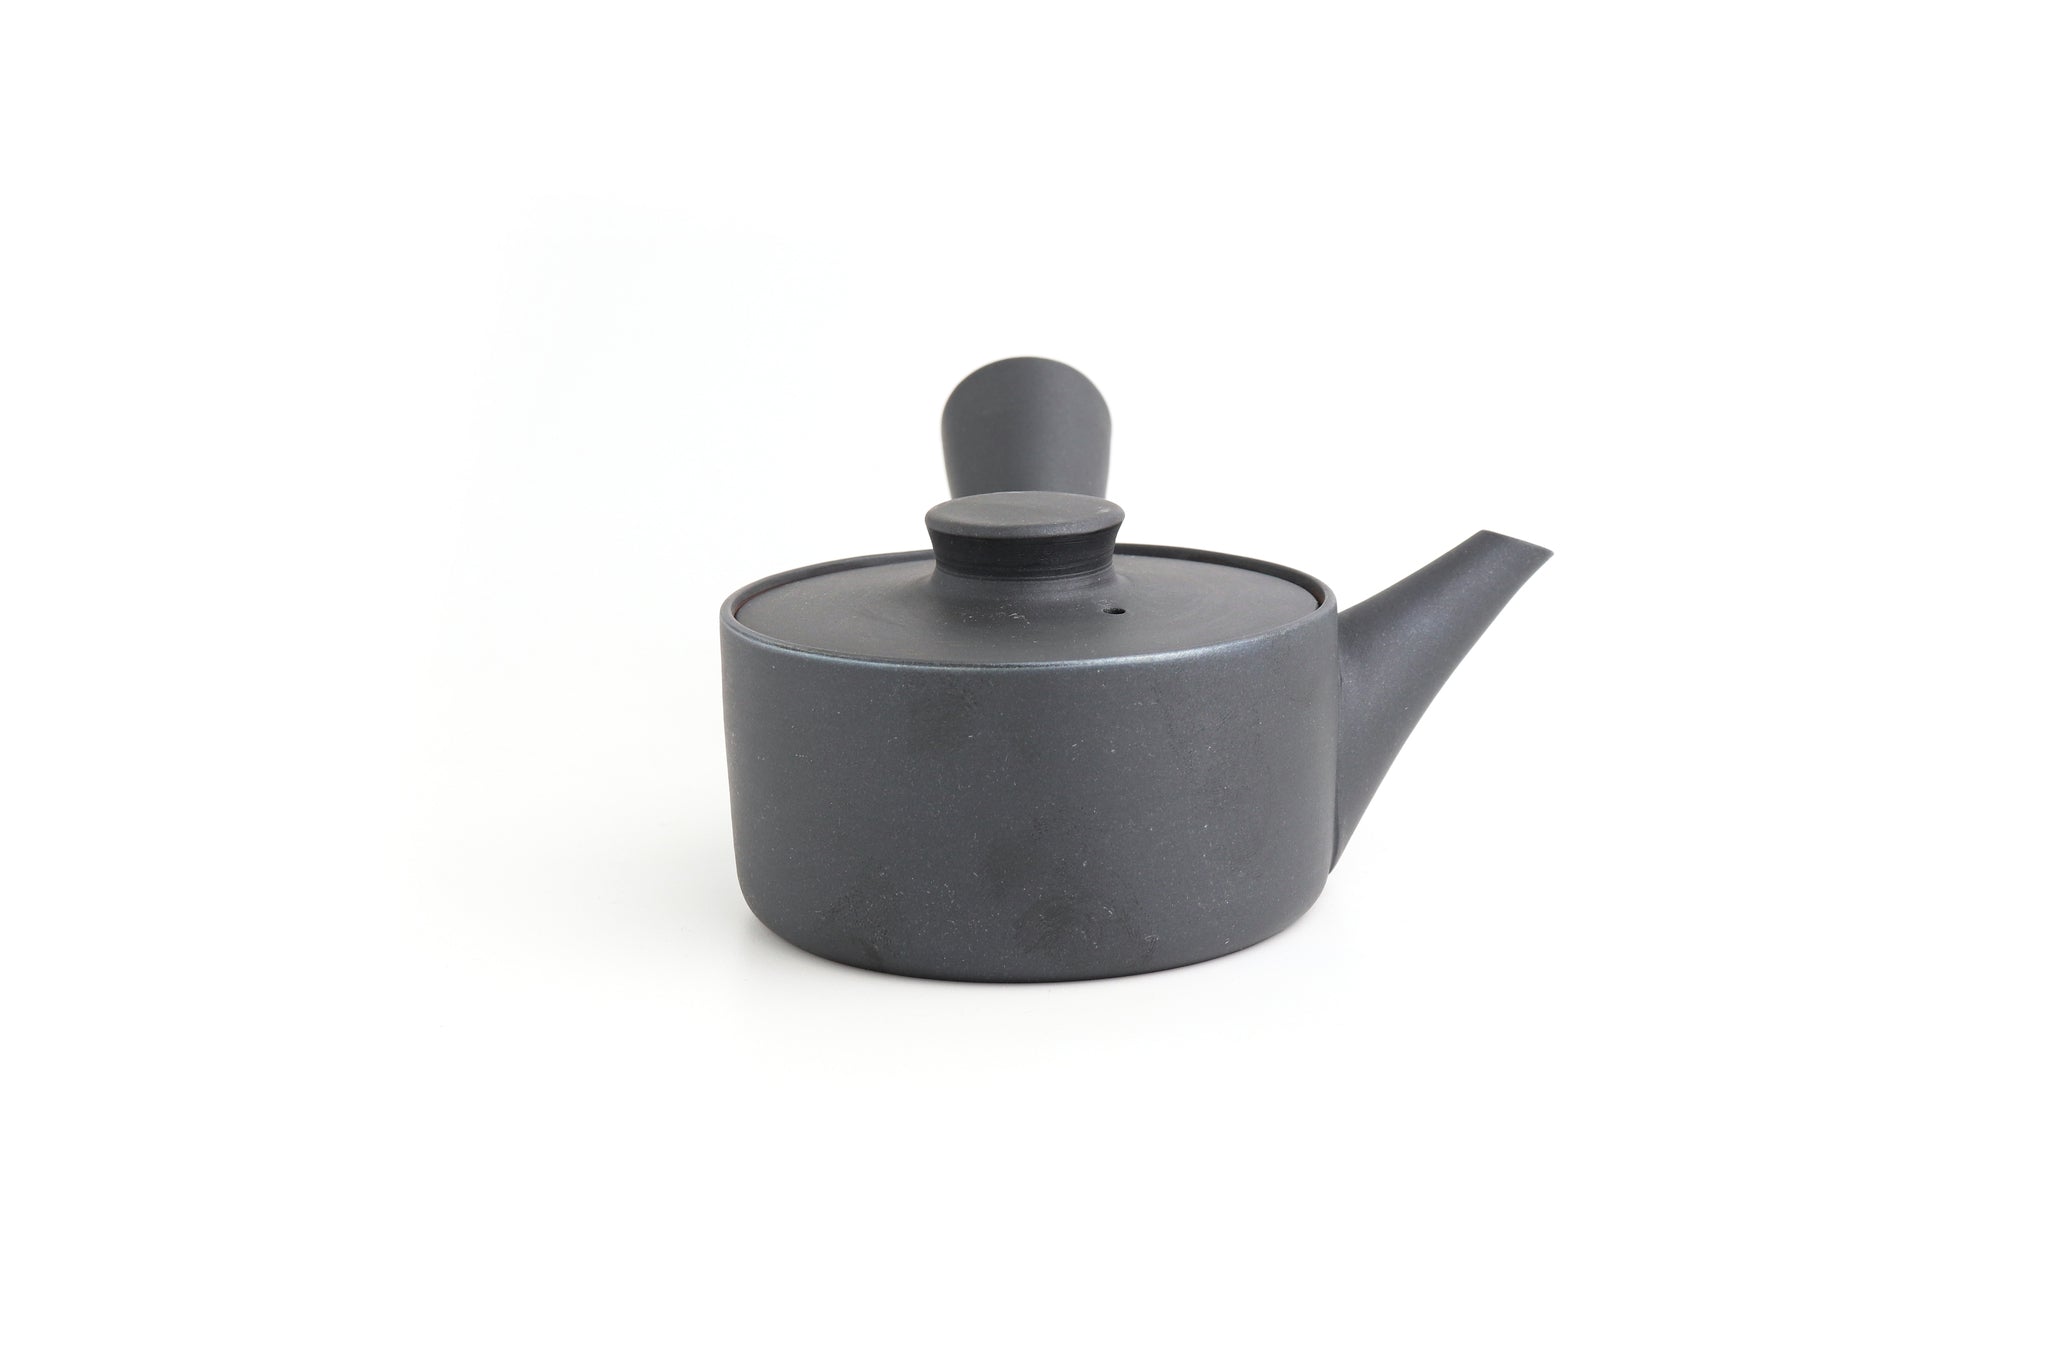 إبريق شاي | يوميكو إيهوشي | سعة صغيرة (200 مل)